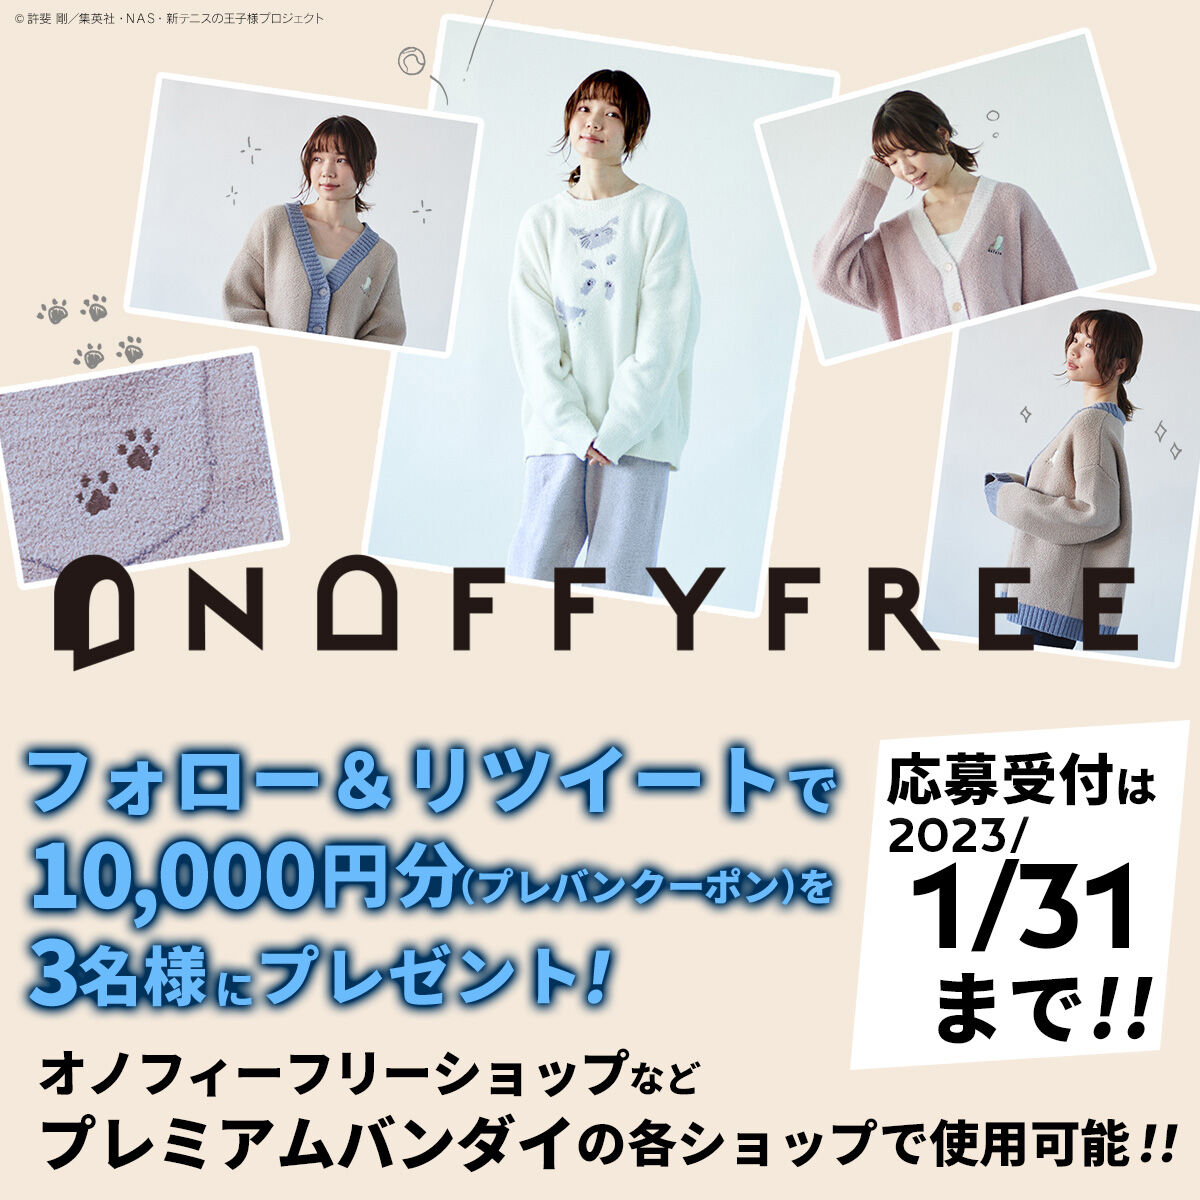 「ONOFFYFREE」推し活応援Twitterキャンペーン